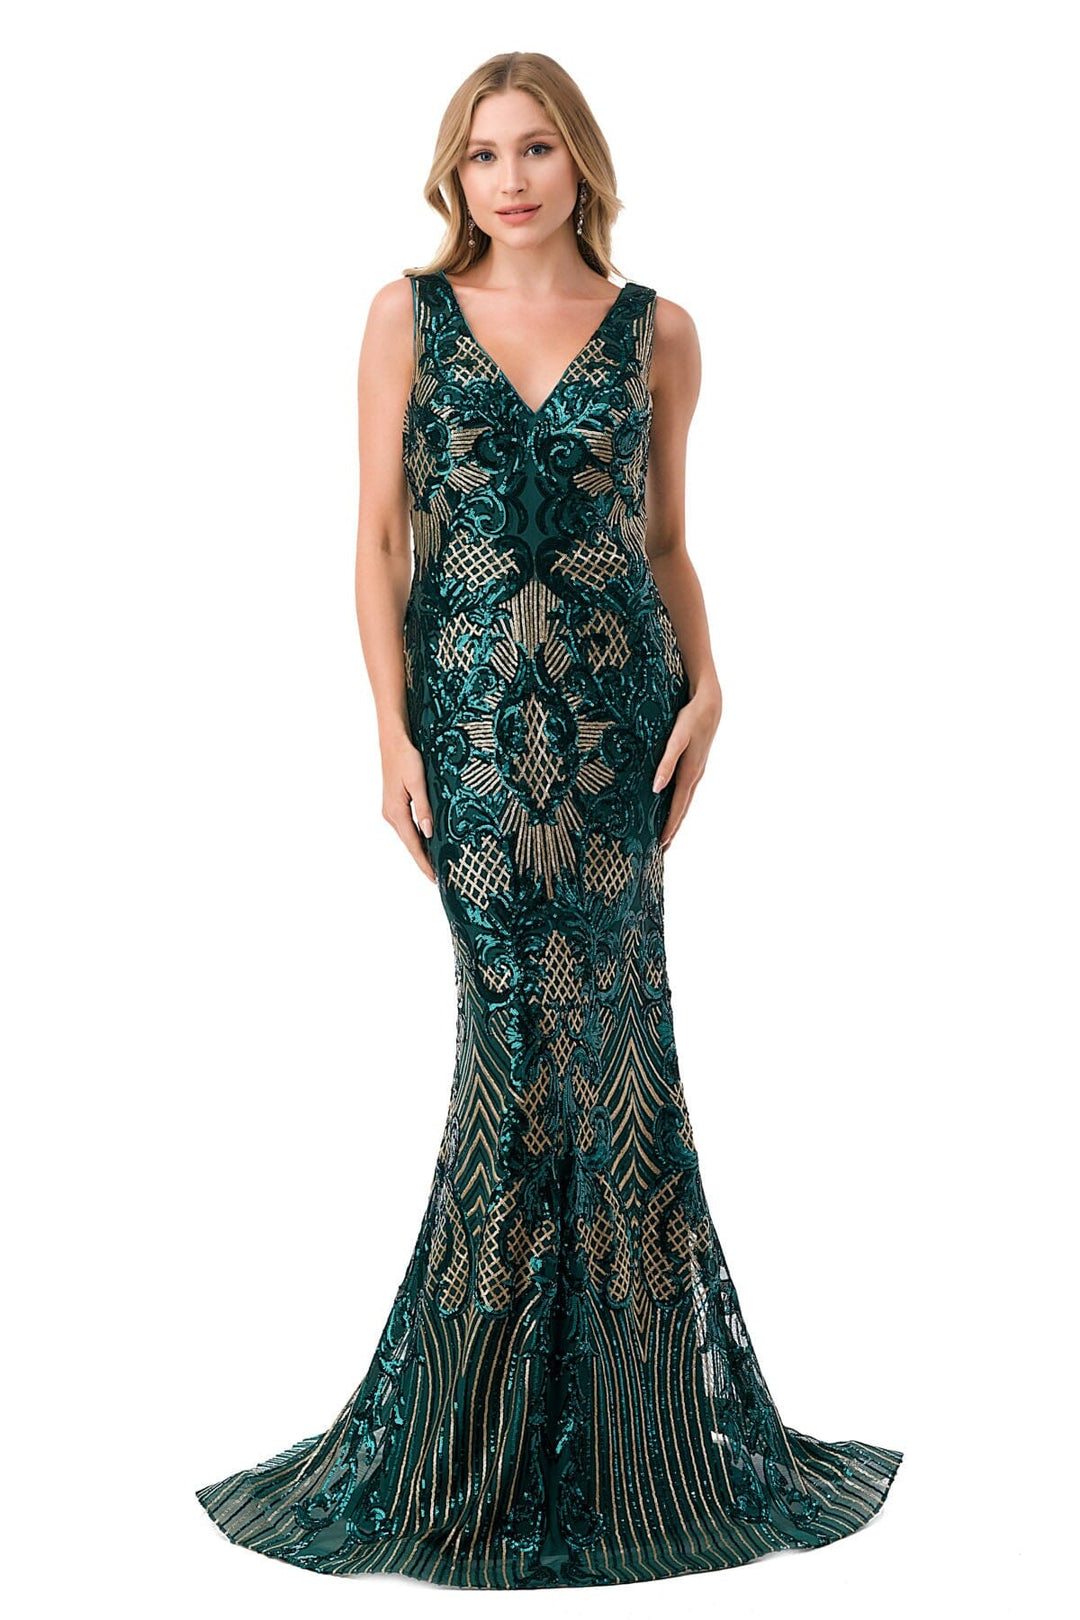 Sequin Print Sleeveless Mermaid Dress by Coya M2803Y